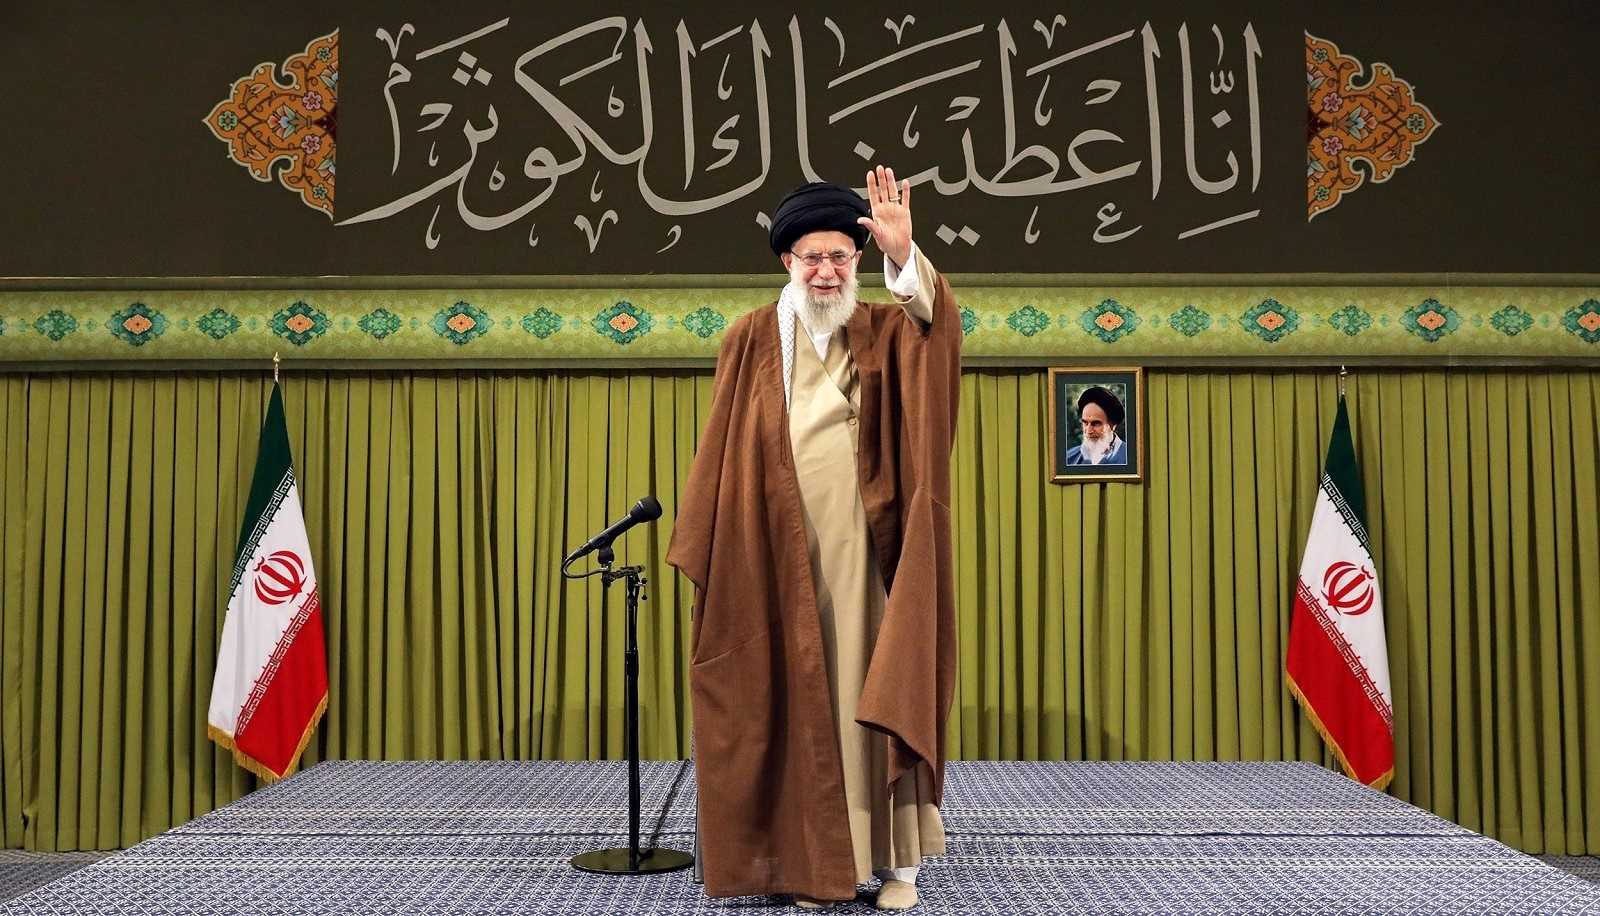 قائد الثورة الاسلامية يؤكد اهمية القوة الناعمة وجهاد التبيين